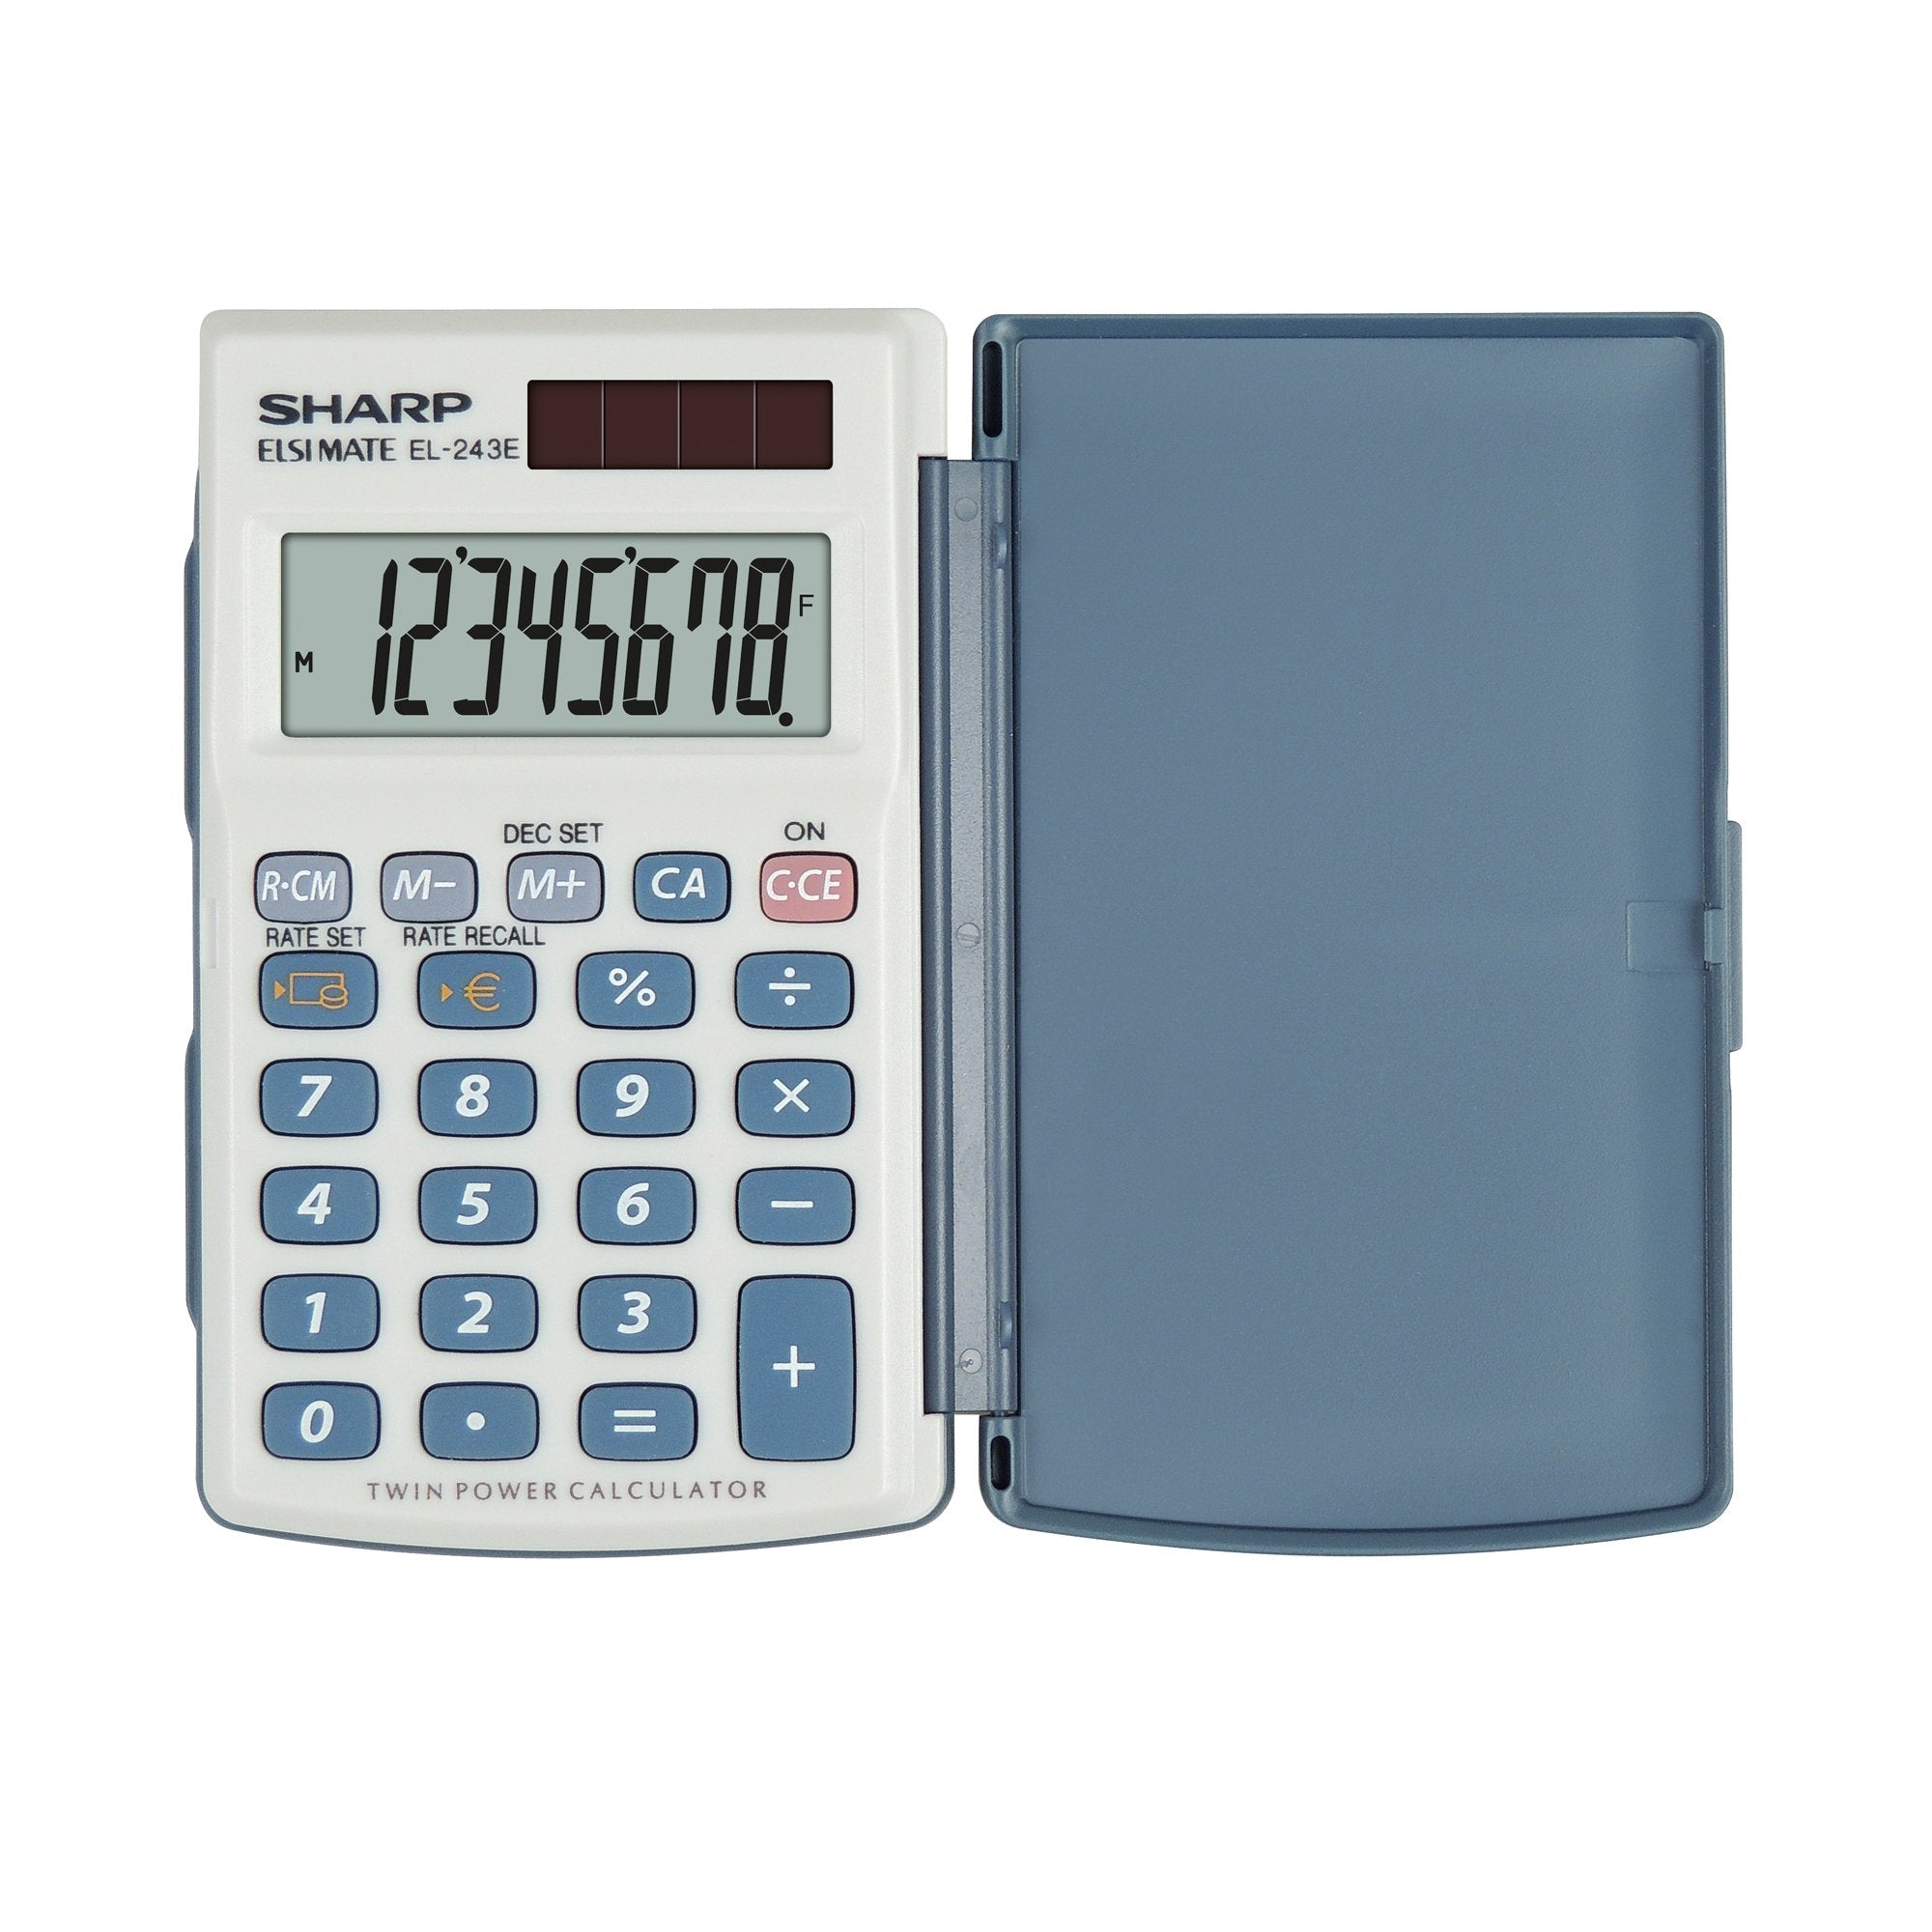 sharp-calcolatrice-el-243eb-8-cifre-tascabile